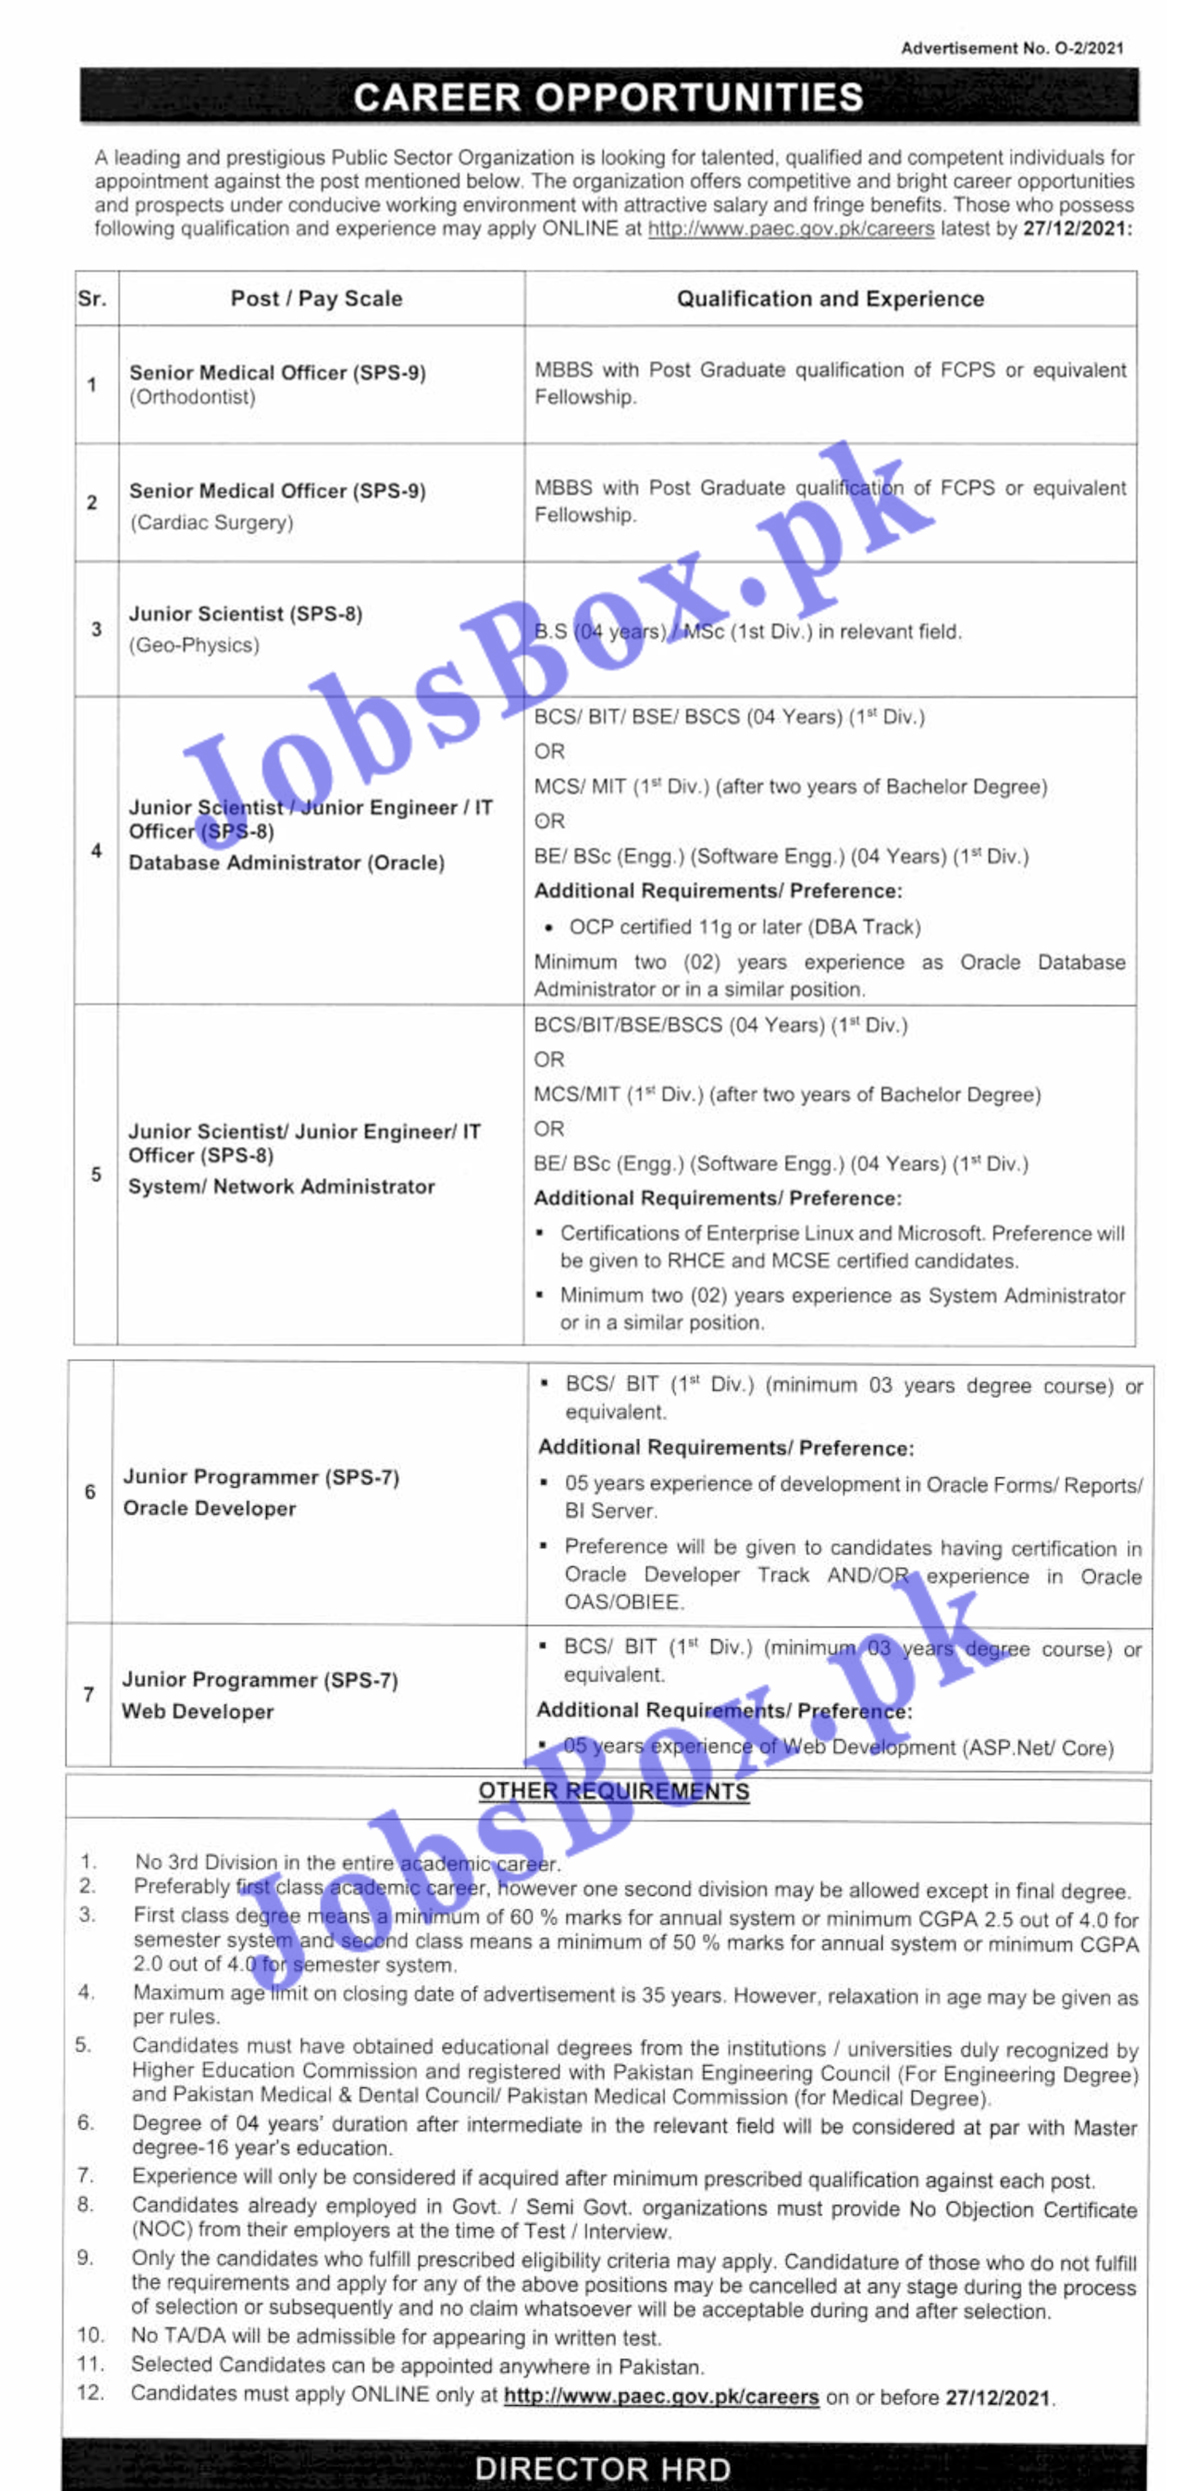 Pakistan Atomic Energy Commission PAEC Jobs 2021 - www.paec.gov.pk